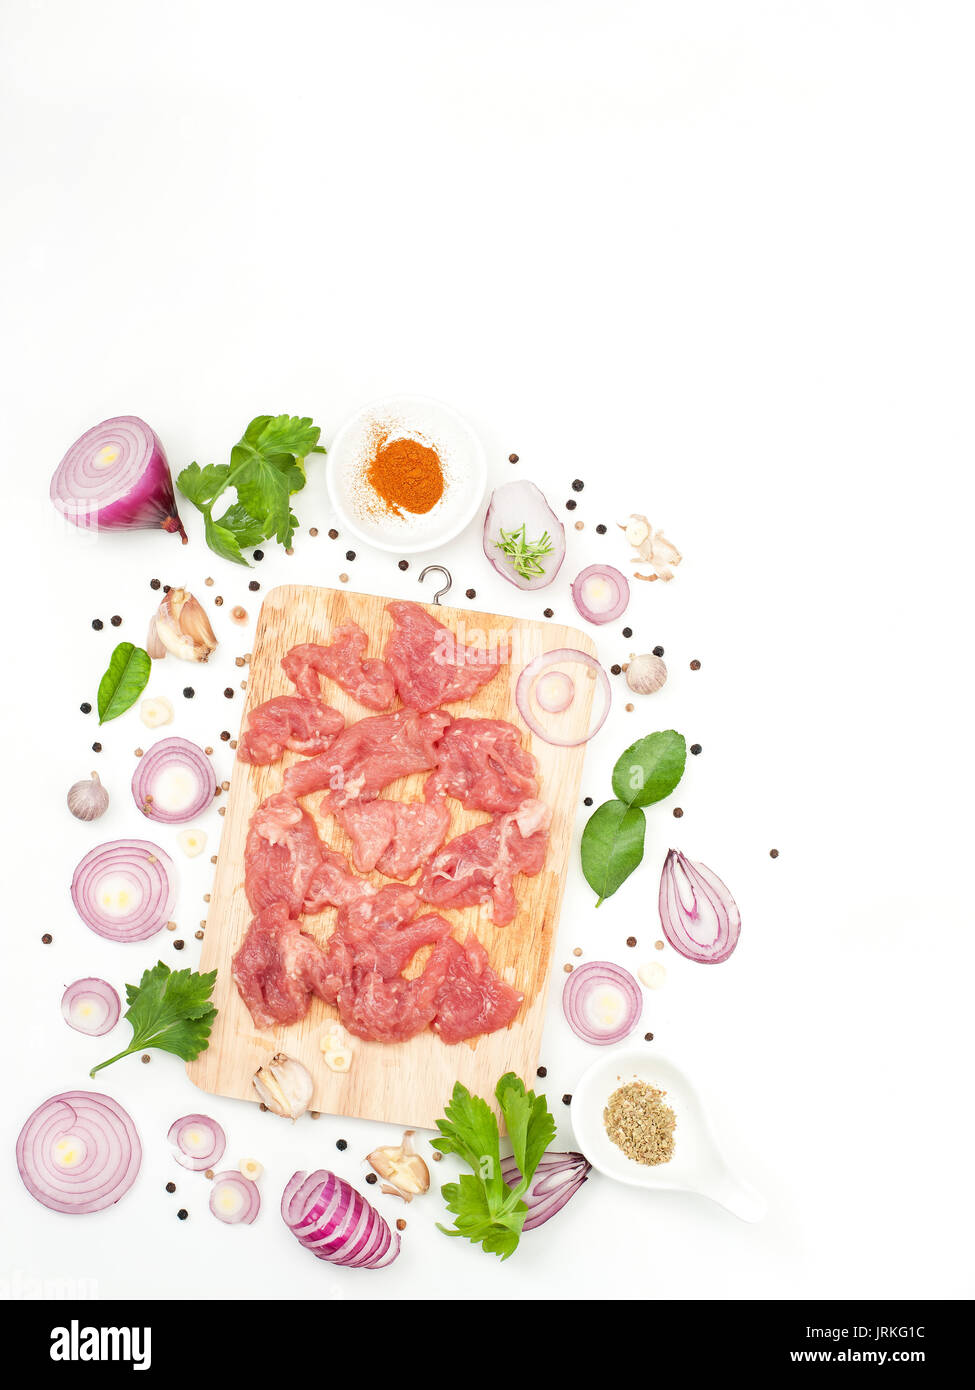 Hierba de cerdo adobada con sésamo y la fragancia deliciosa comida asiática style Foto de stock